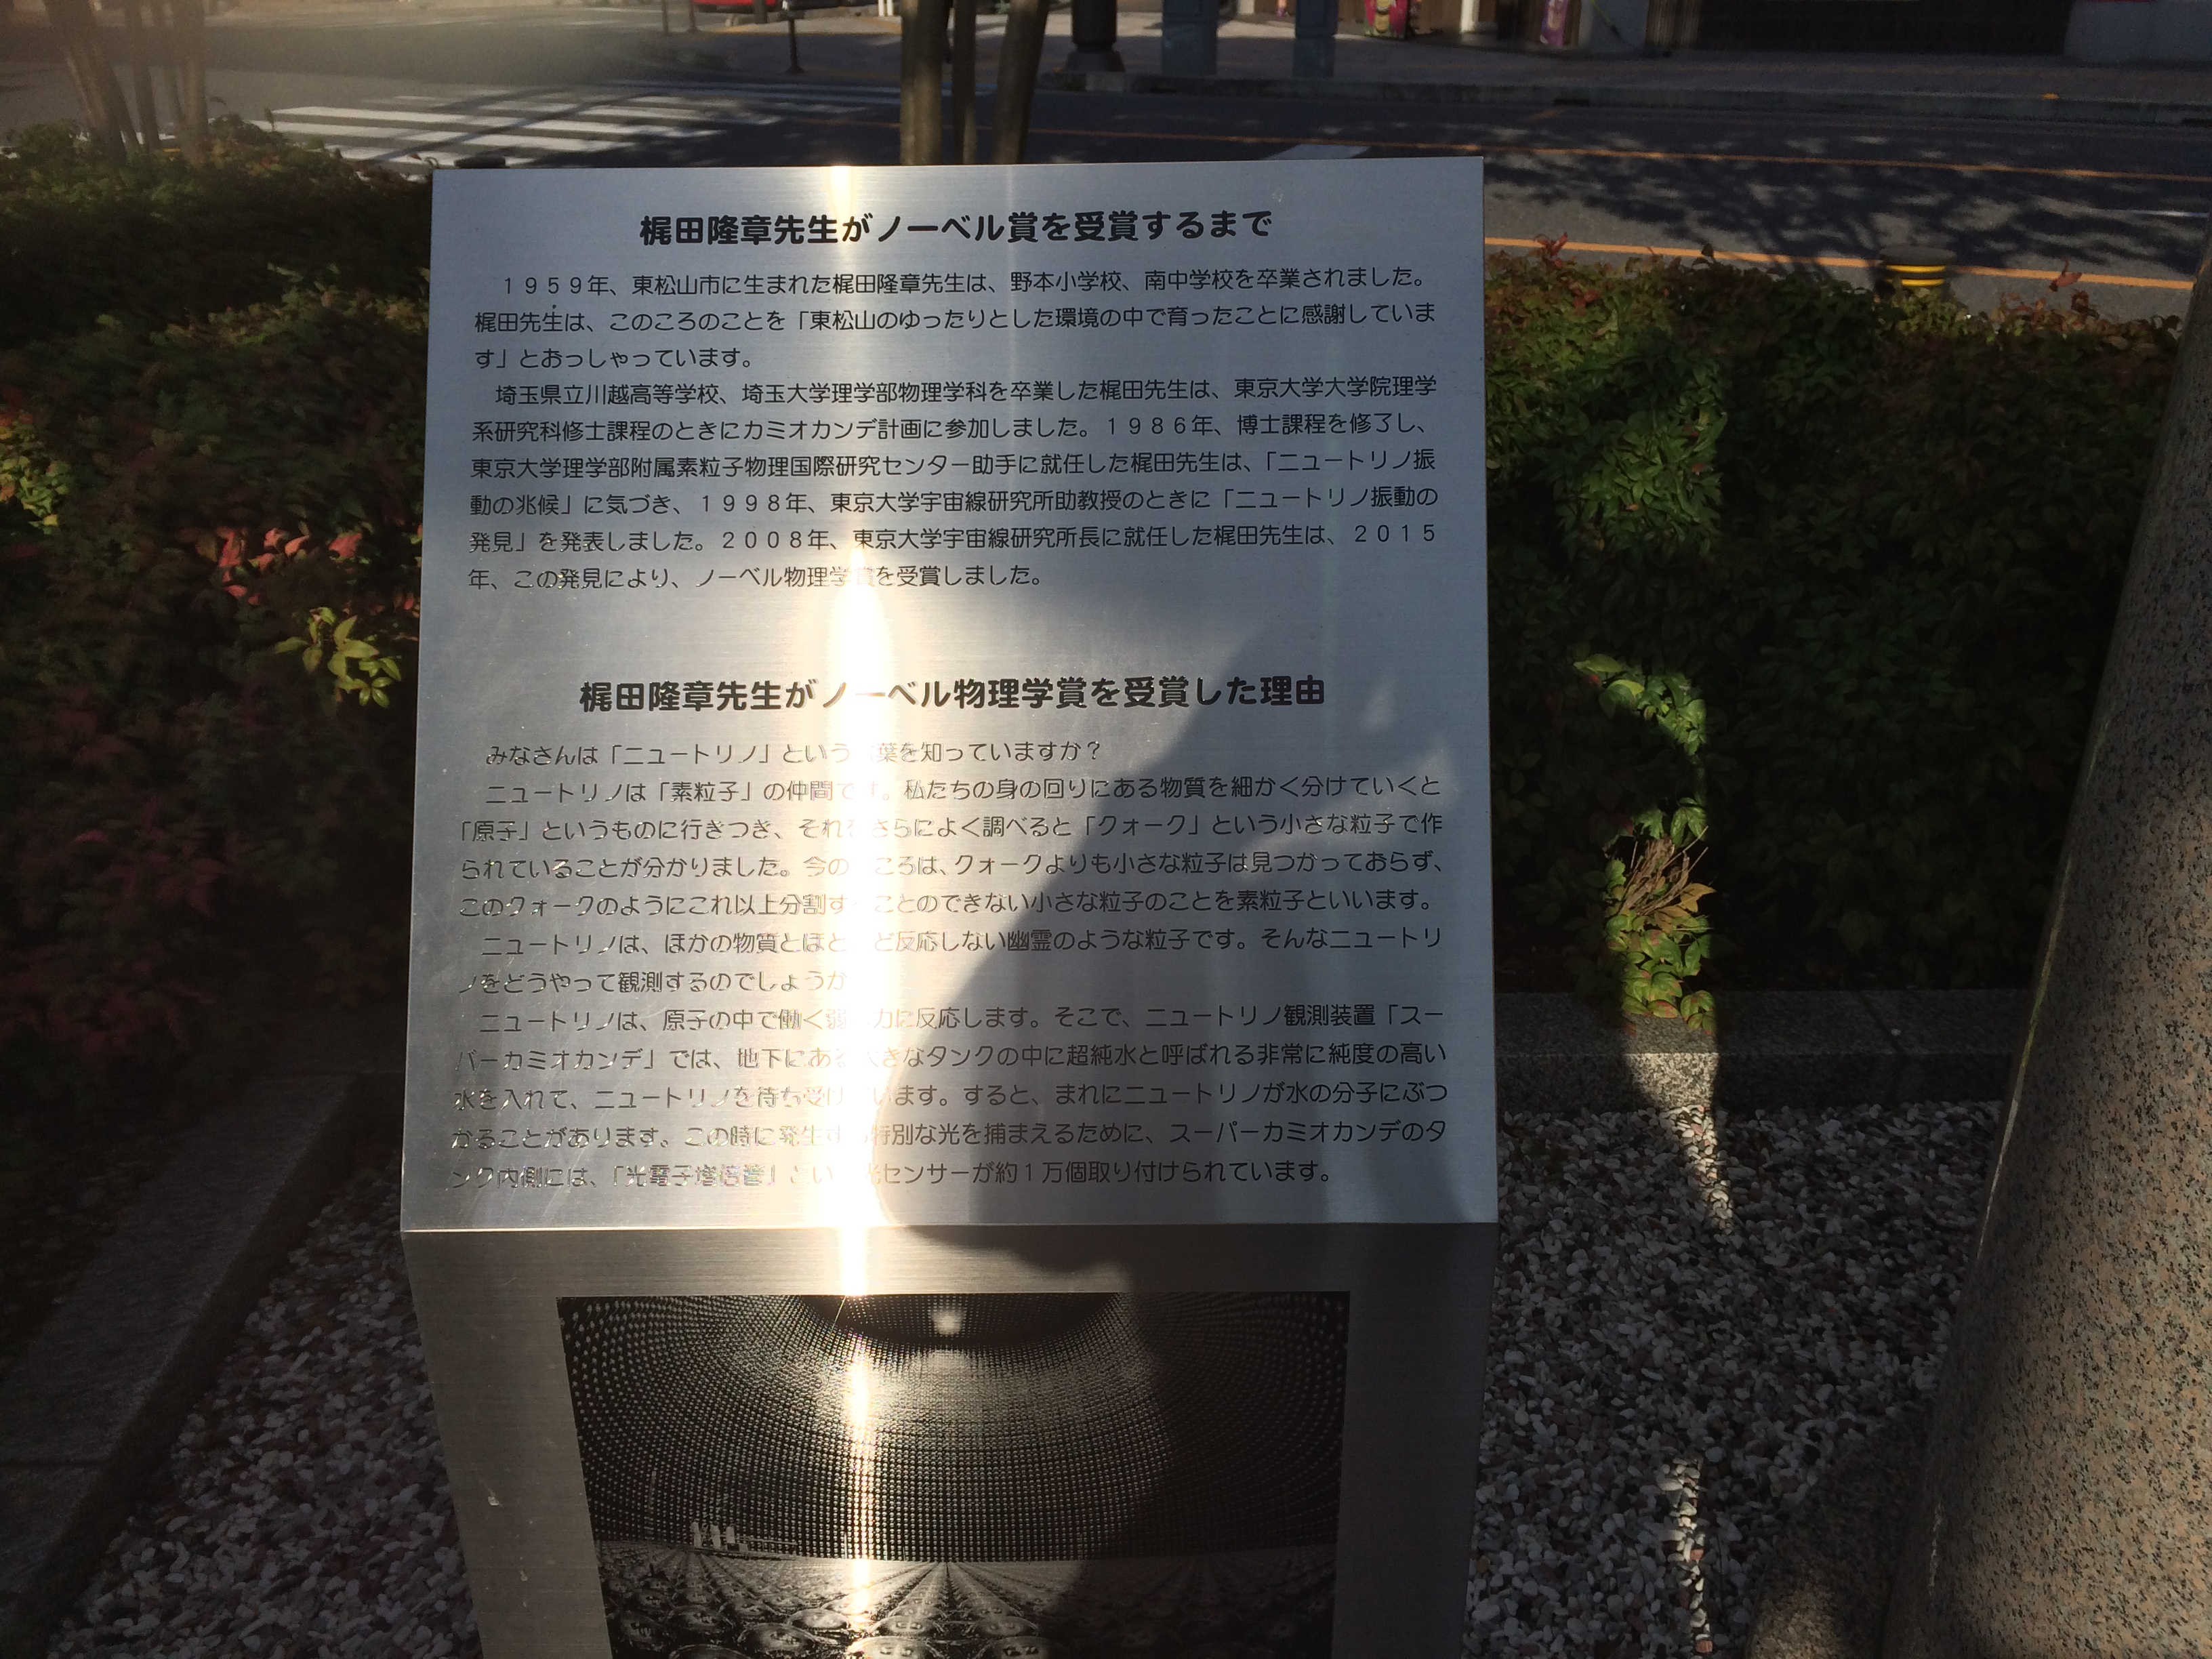 梶田隆章先生 ノーベル物理学賞受賞記念碑